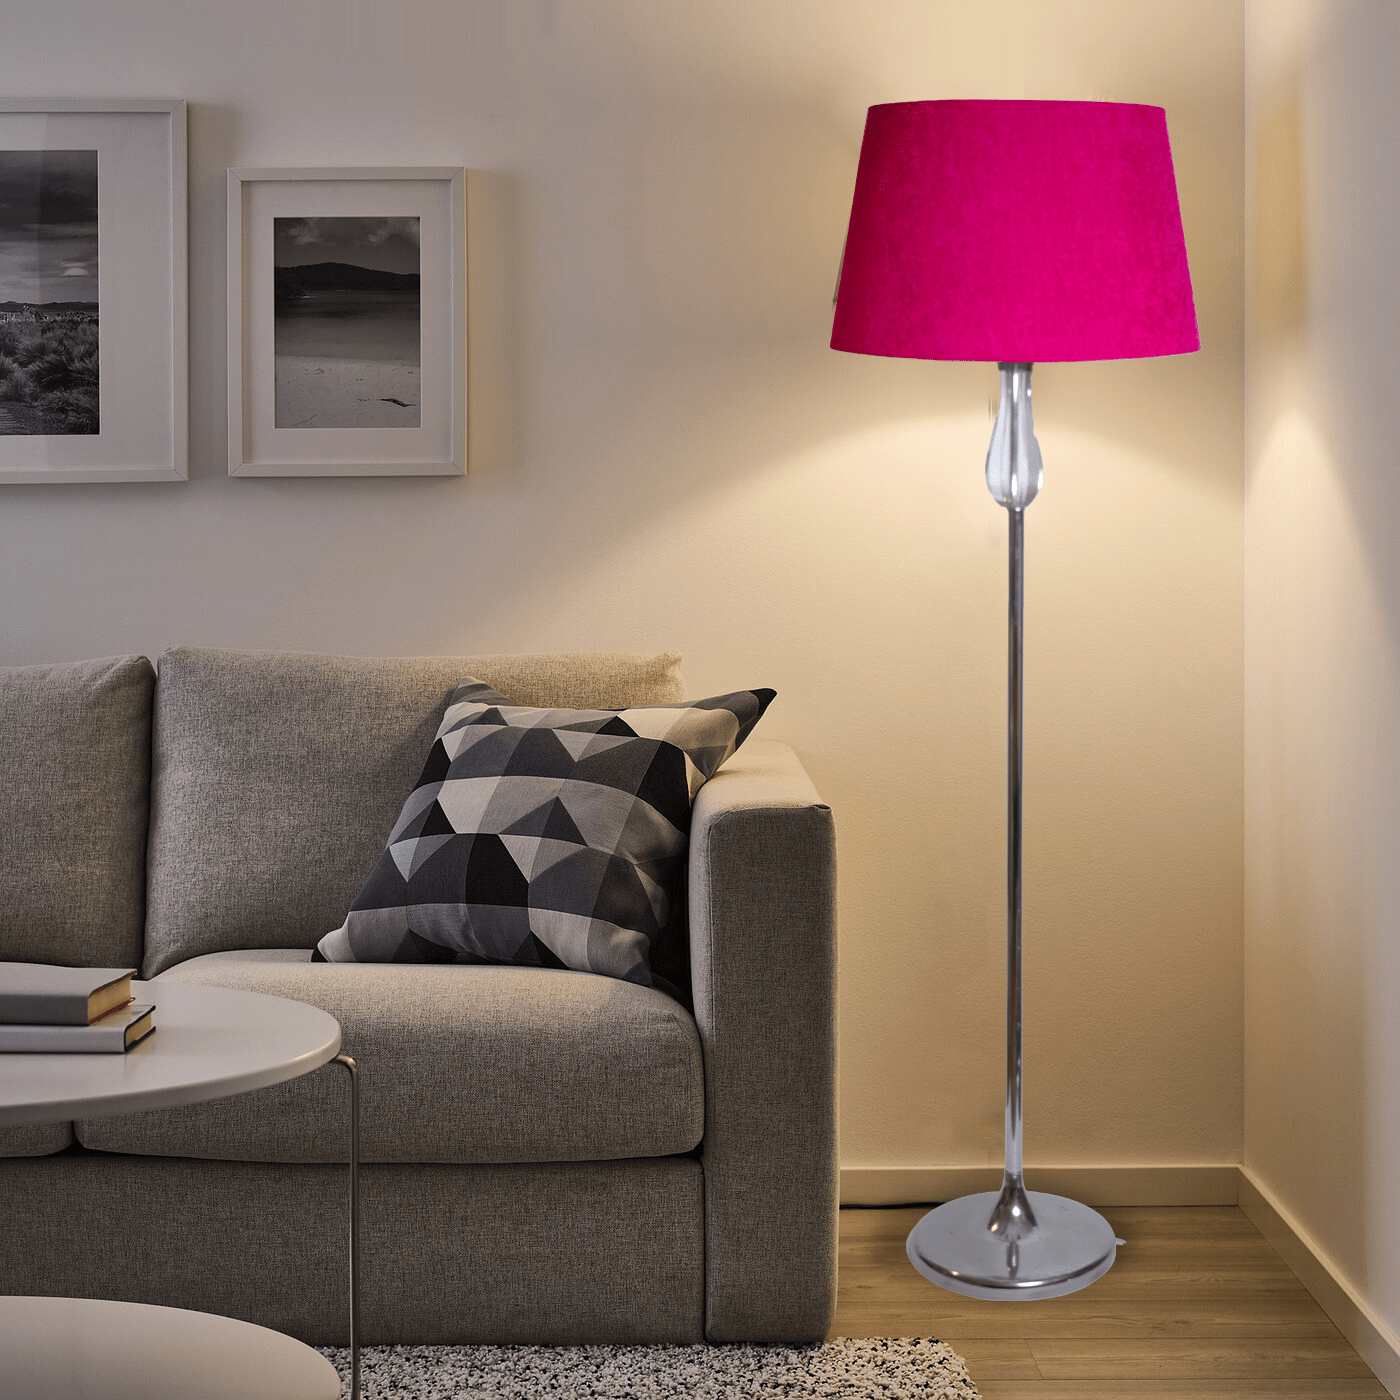 Floor Lamp - ms032